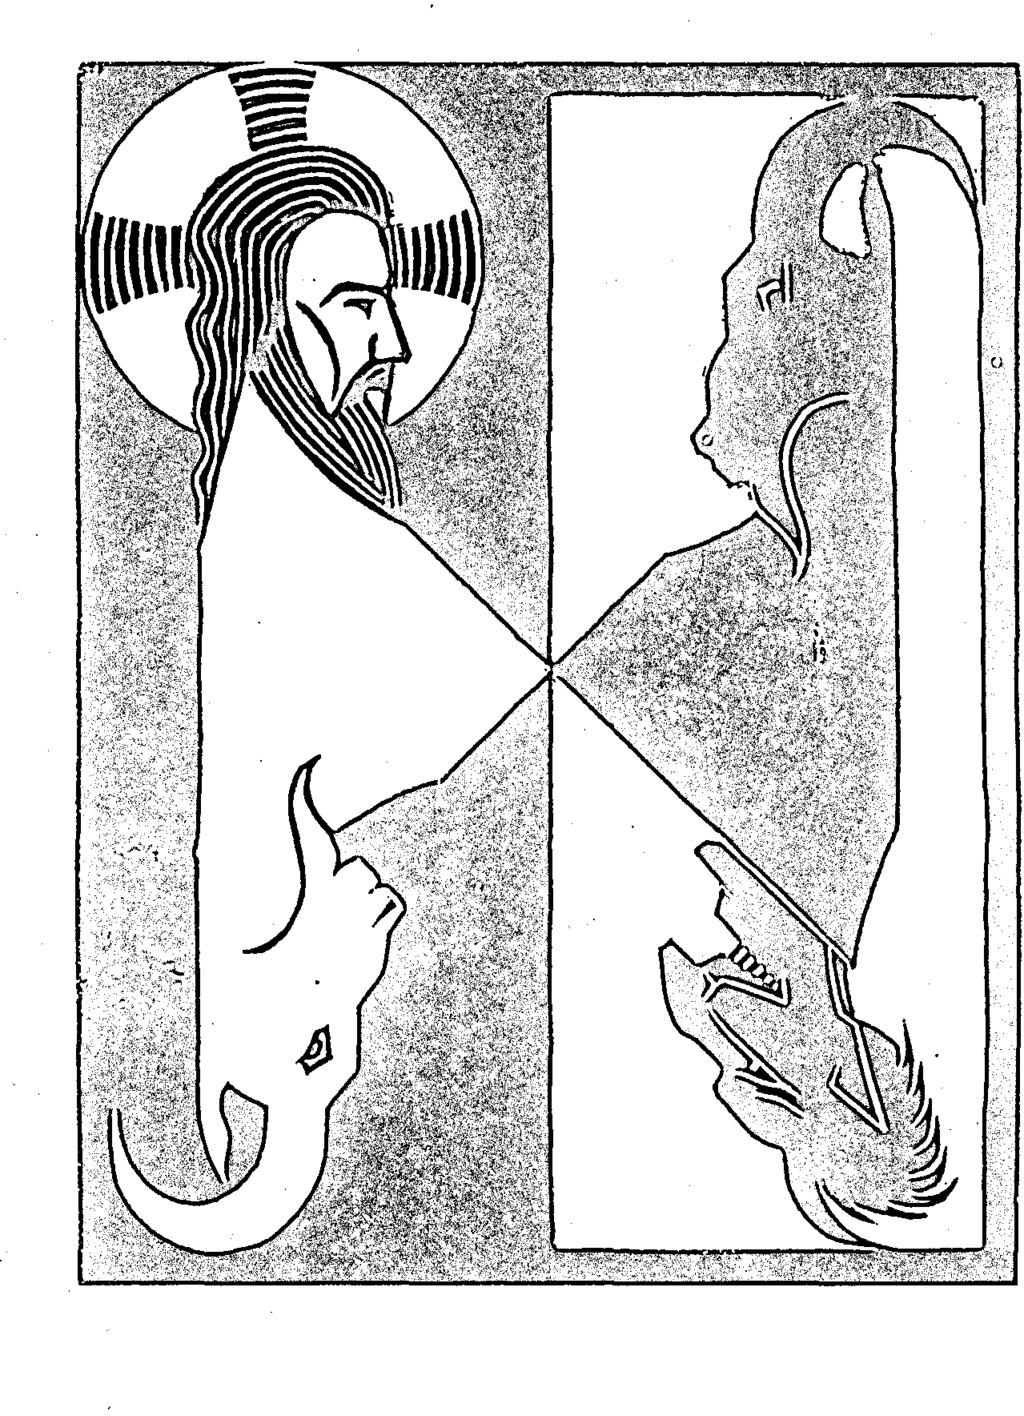 KôTüLÜK SORUNU M. C. Escher, "Günah Keçisi," 1921.